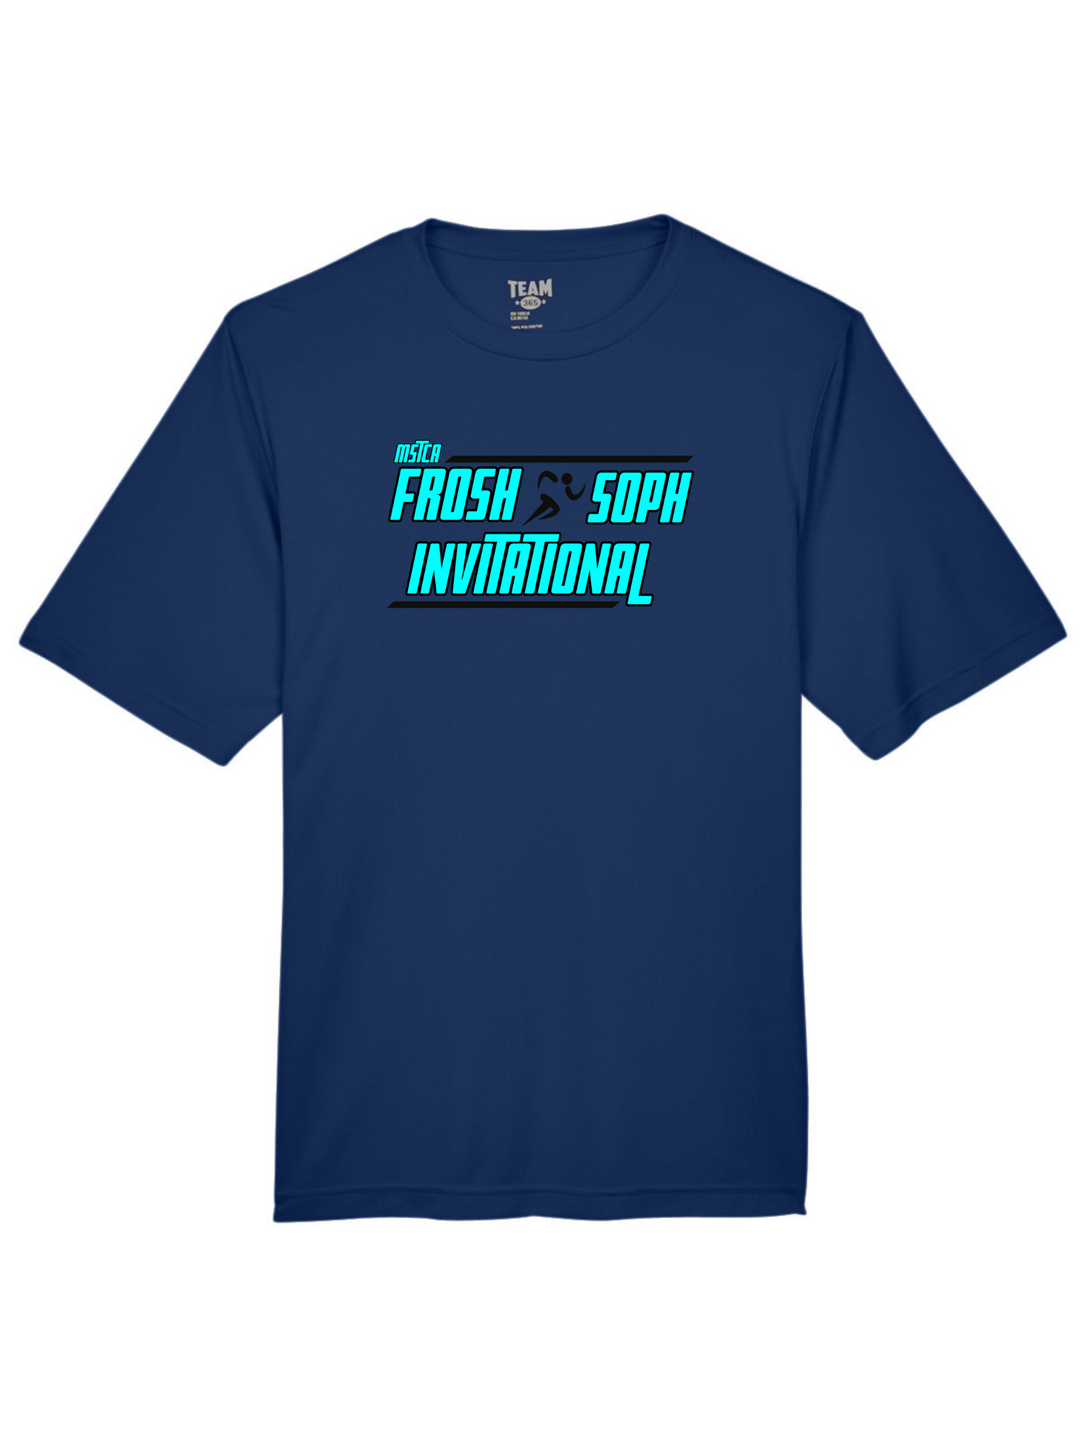 MSTCA William Kane Frosh/Soph Invite - Men's Performance T-Shirt (TT11)